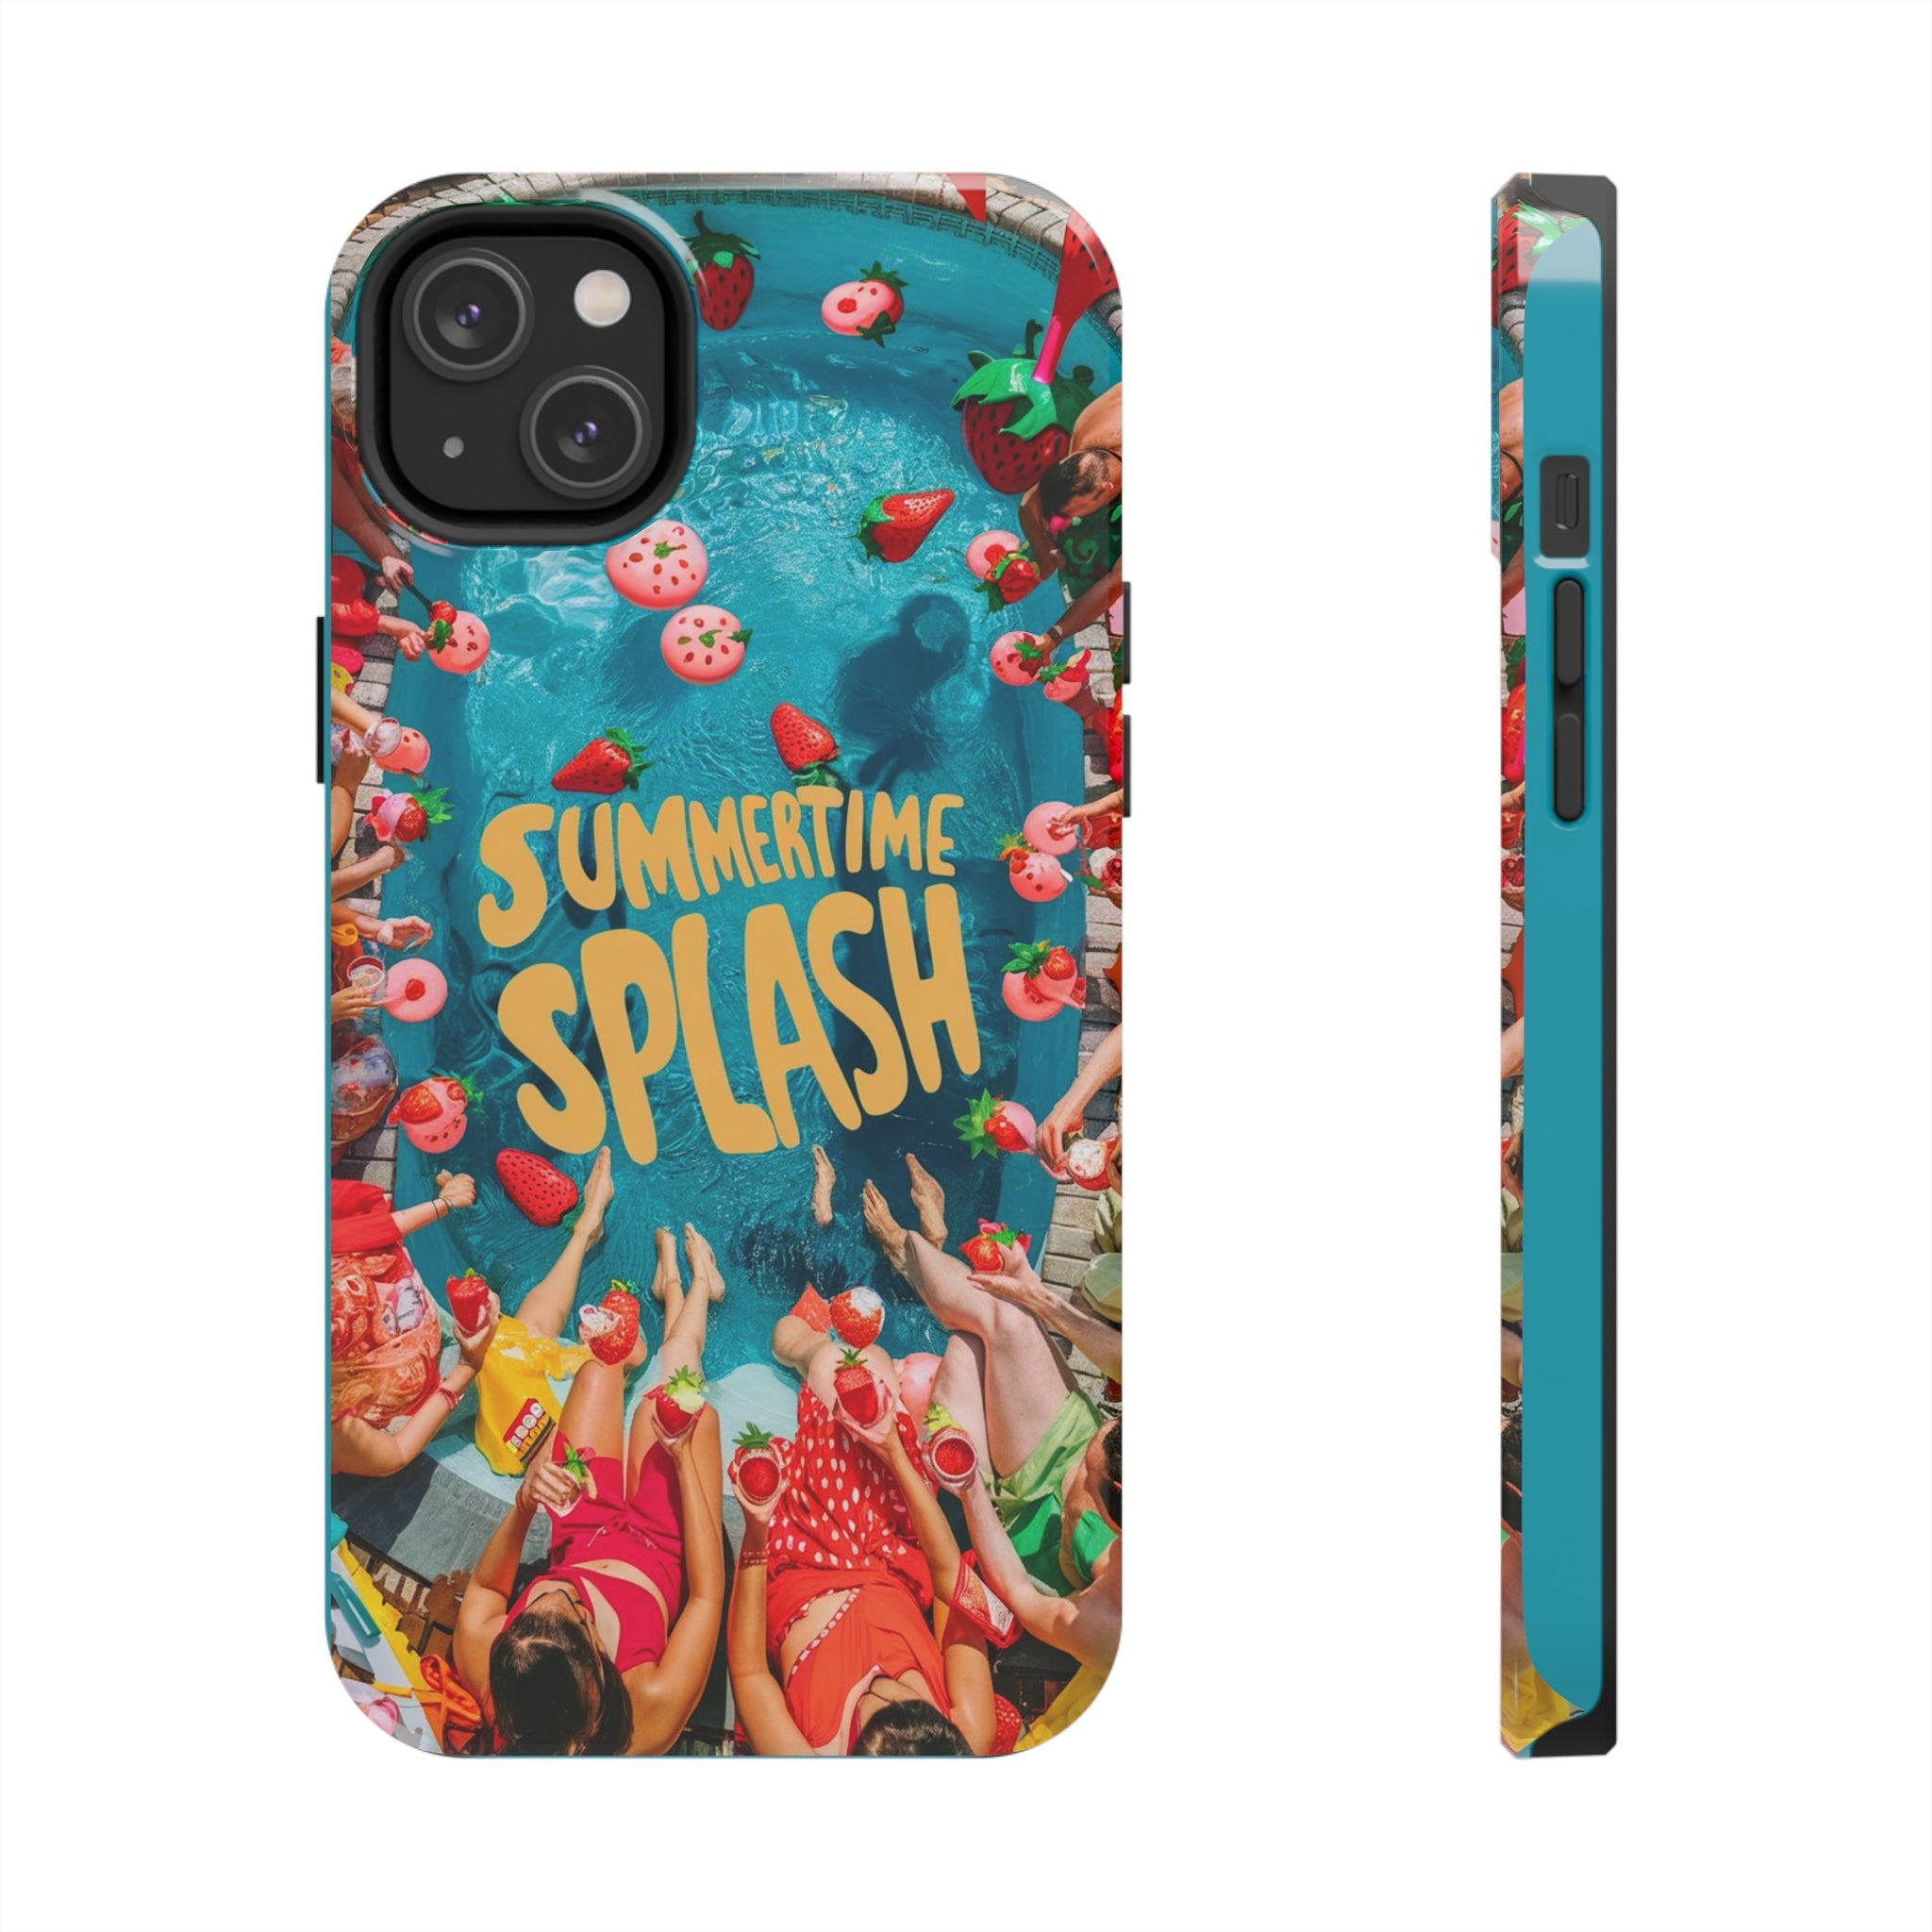 Summertime Splash - Tough Phone Cases